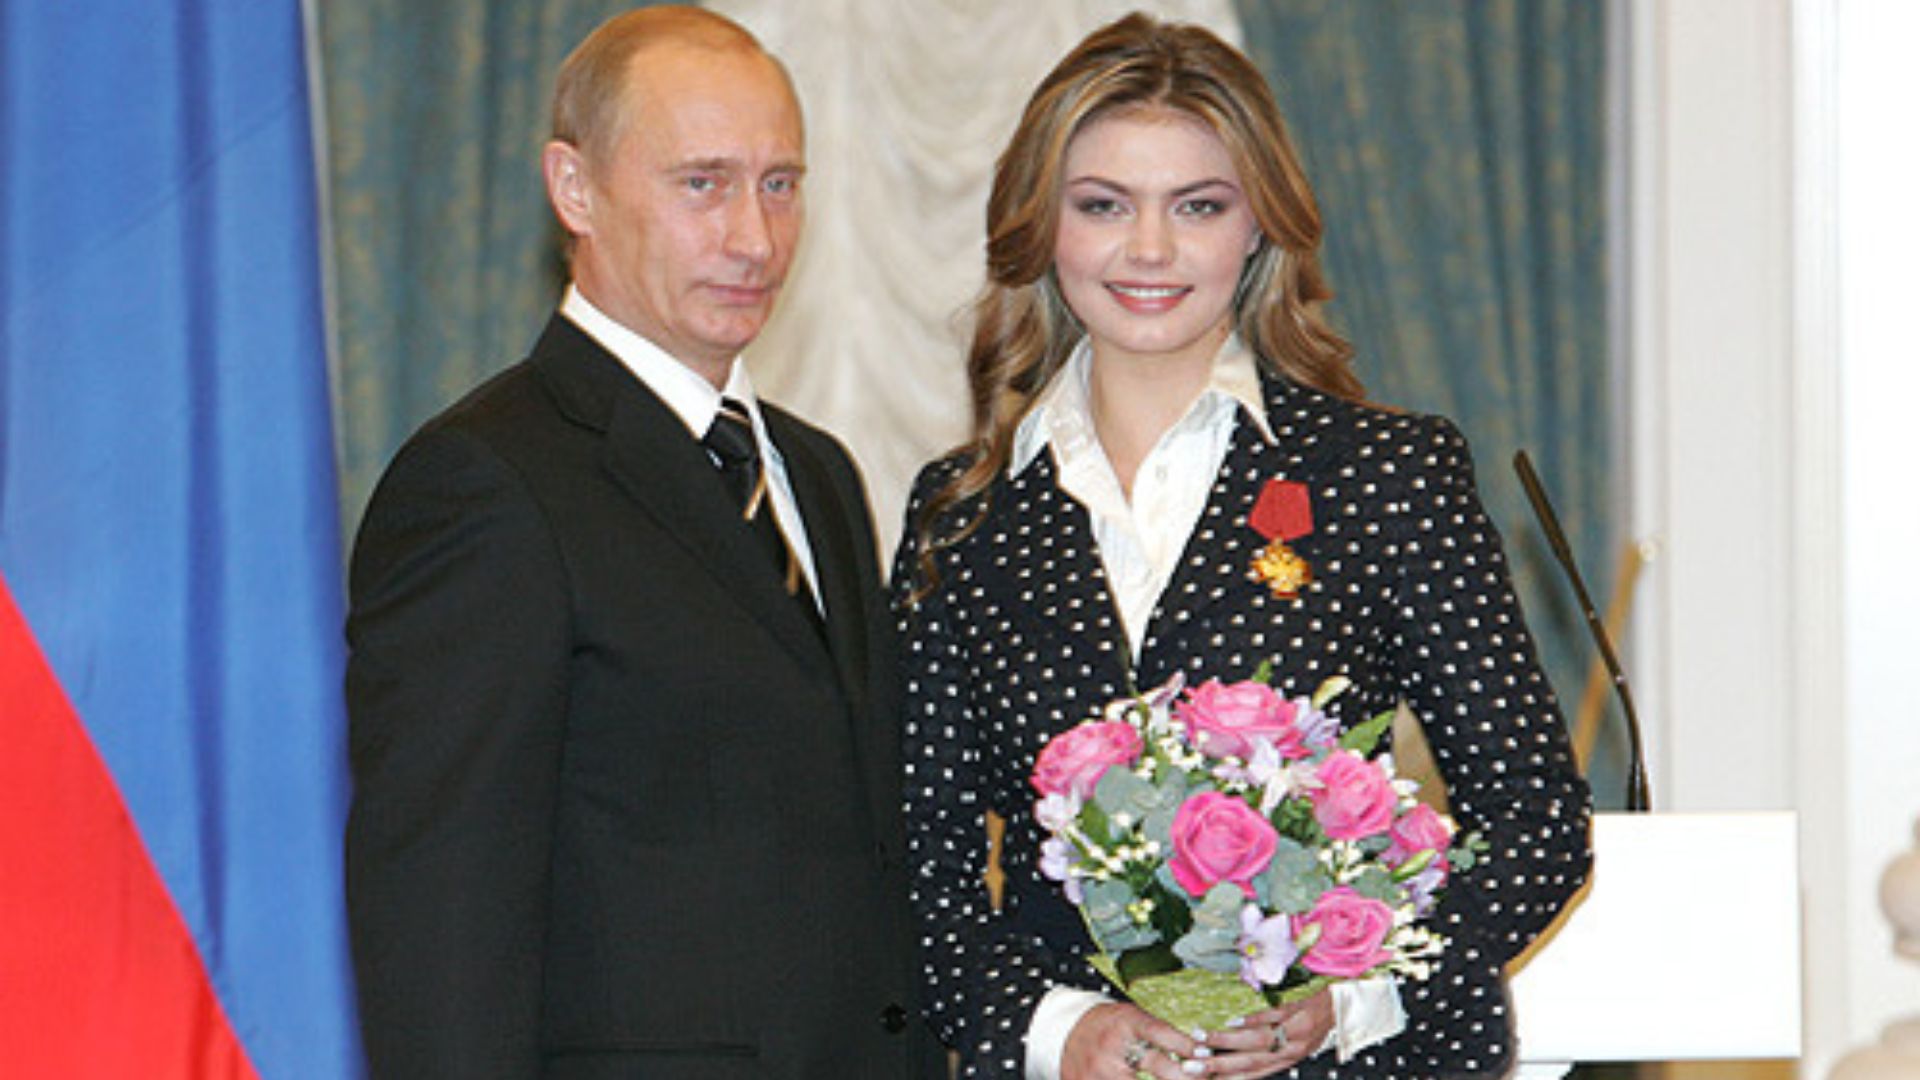 Un politician rus, dezvăluiri despre relația lui Vladimir Putin cu gimnasta Alina Kabaeva: ”Am dovezi că nu este nici amanta și nici soția lui secretă”